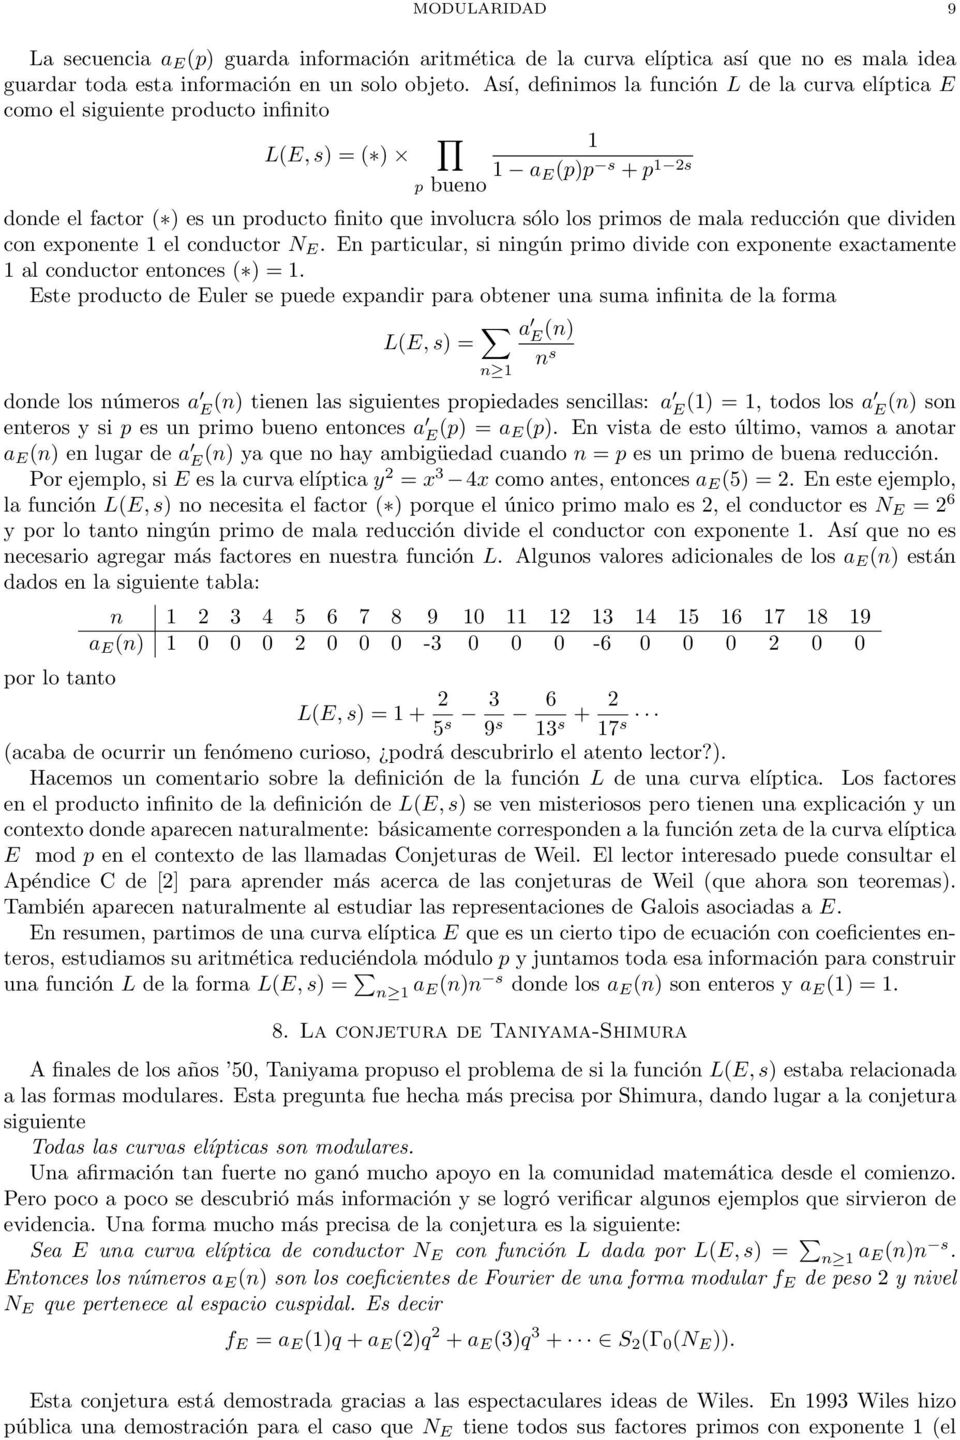 reducción que dividen con exponene el conducor N E. En paricular, si ningún primo divide con exponene exacamene al conducor enonces ( ) =.